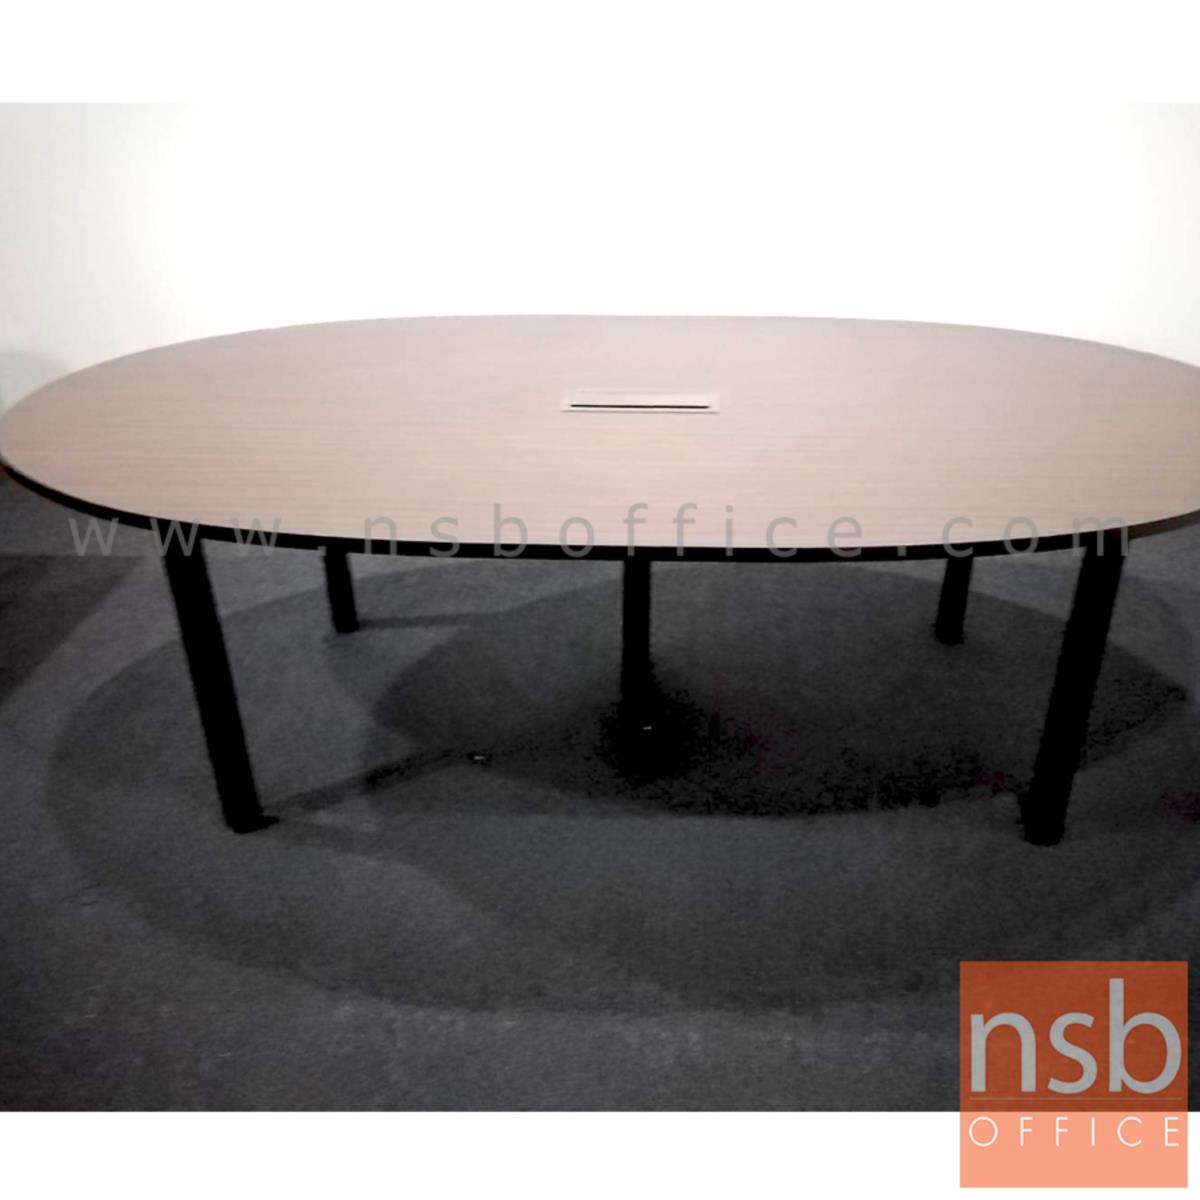 โต๊ะประชุมทรงแคปซูล  ขนาด 200W, 240W cm.  พร้อมกล่องนำสายไฟตรงกลาง ขาเหล็ก